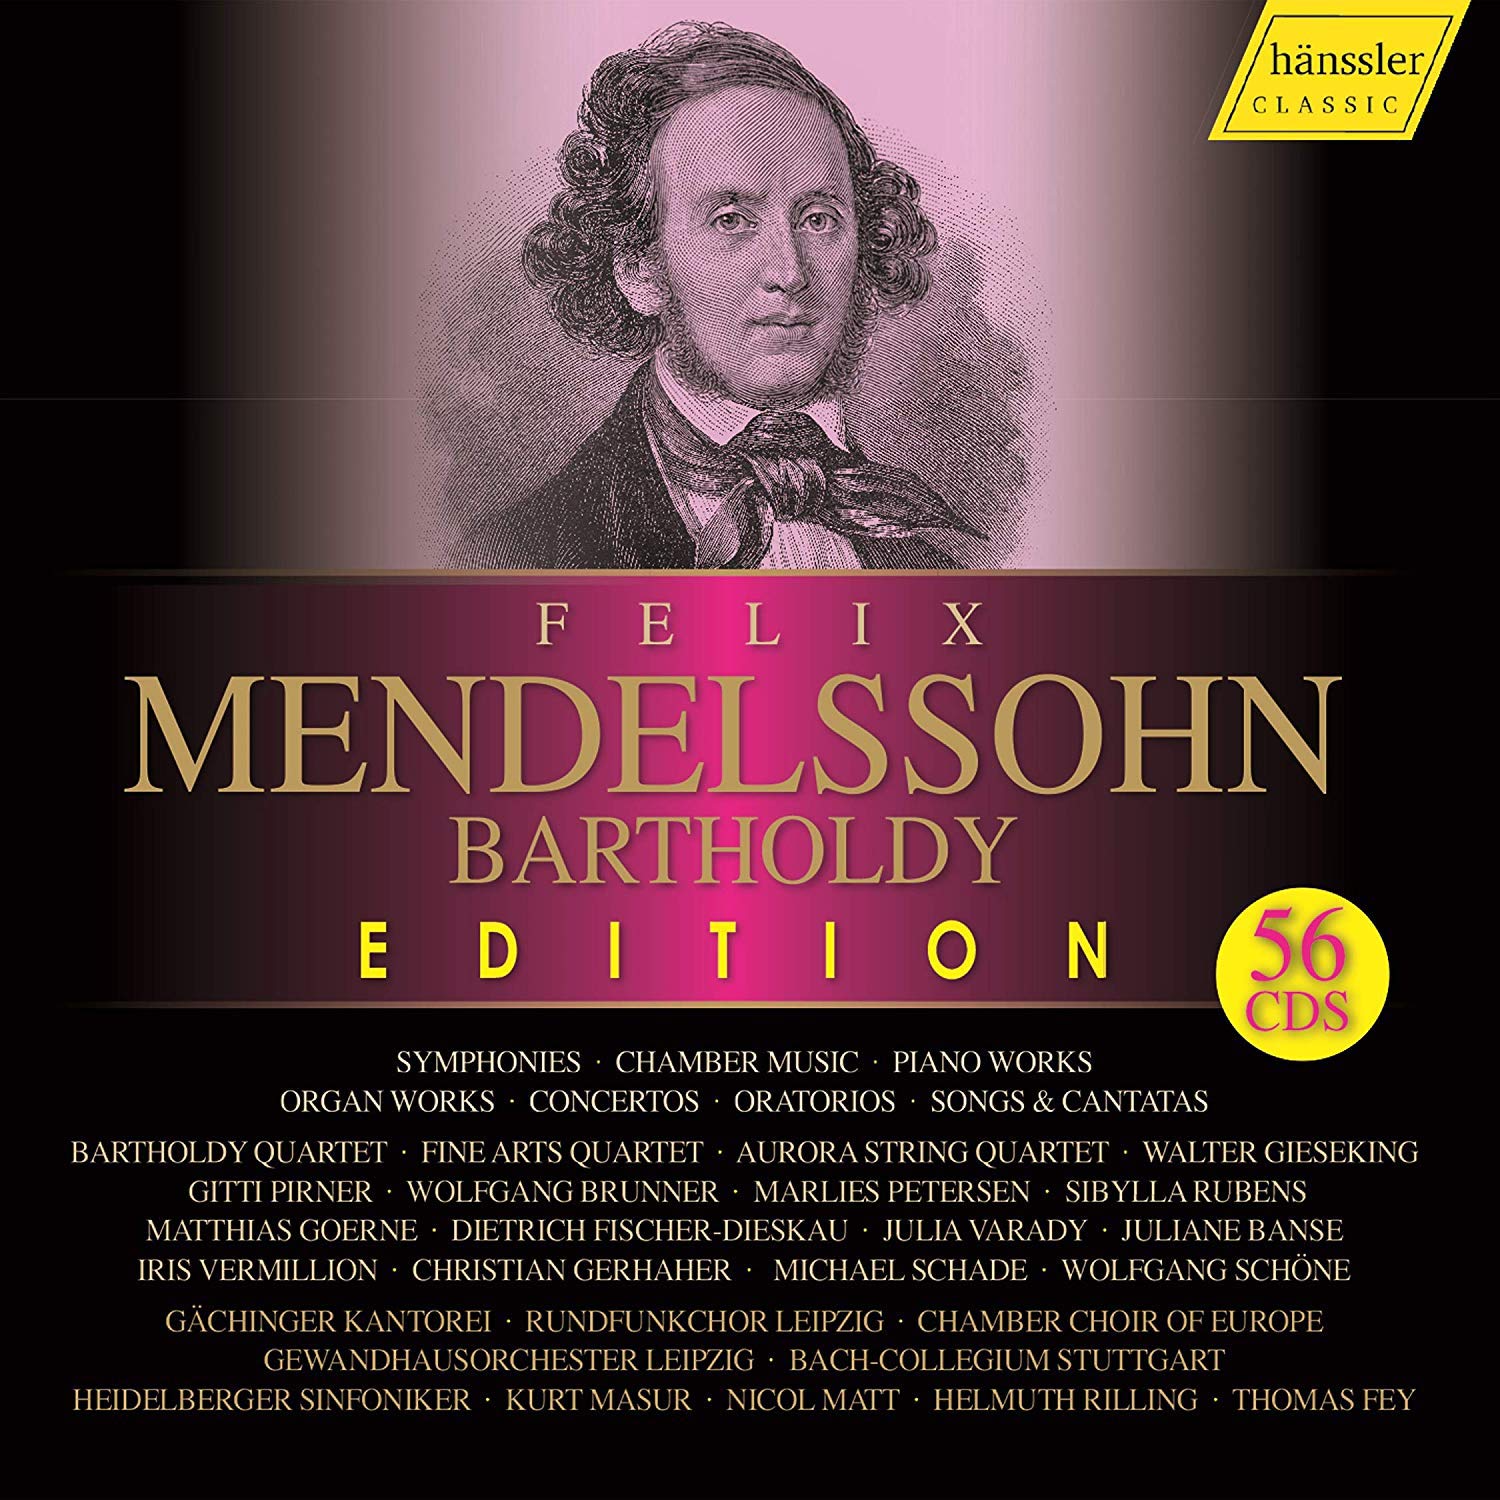 Felix Mendelssohn Bartholdy Edition 56cd